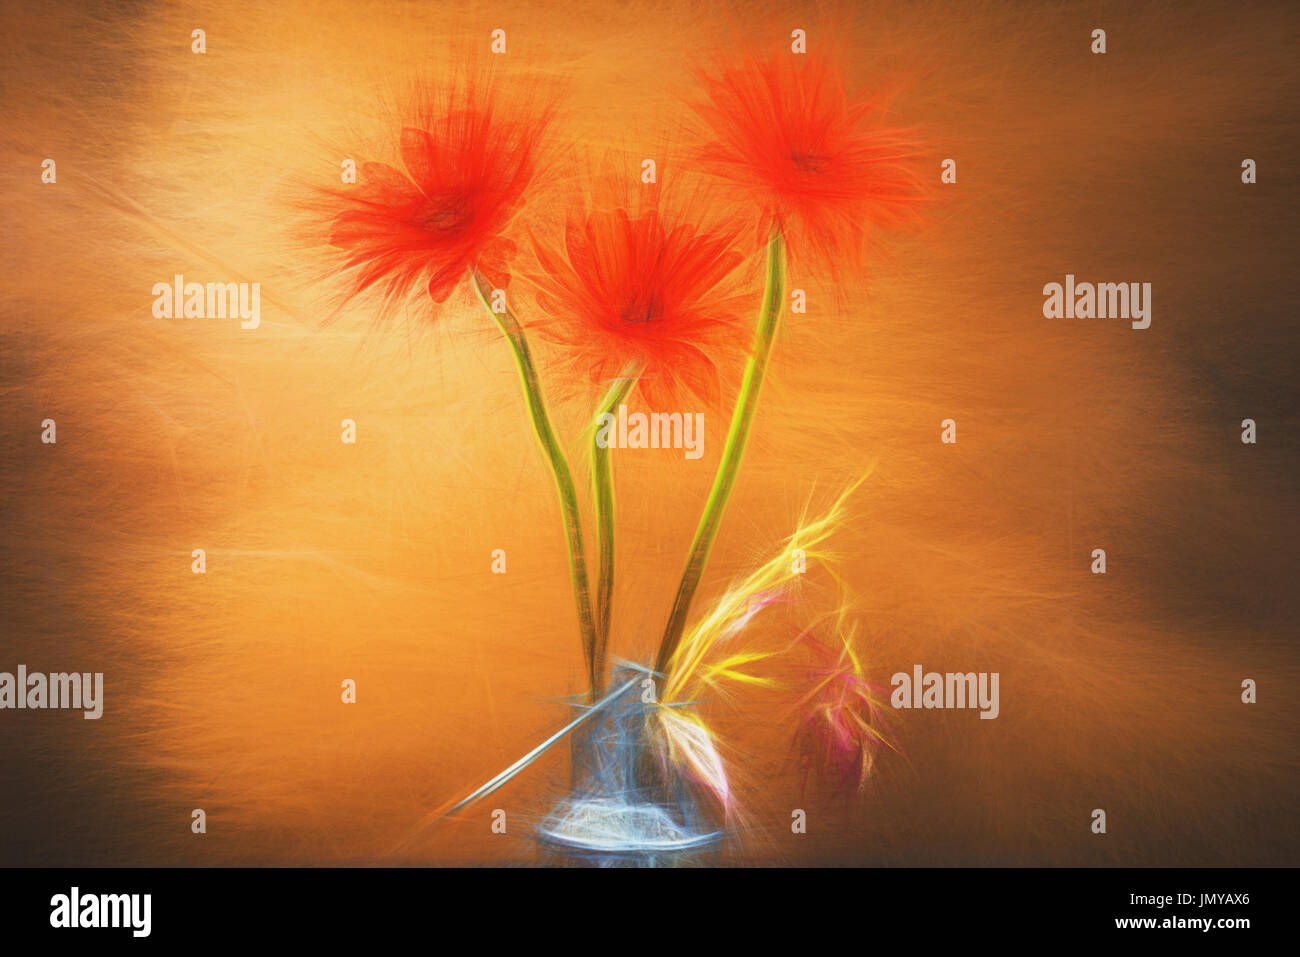 Aquarelle nature morte- fleur rouge dans un vase. Pour l'impression photo grand format. Banque D'Images